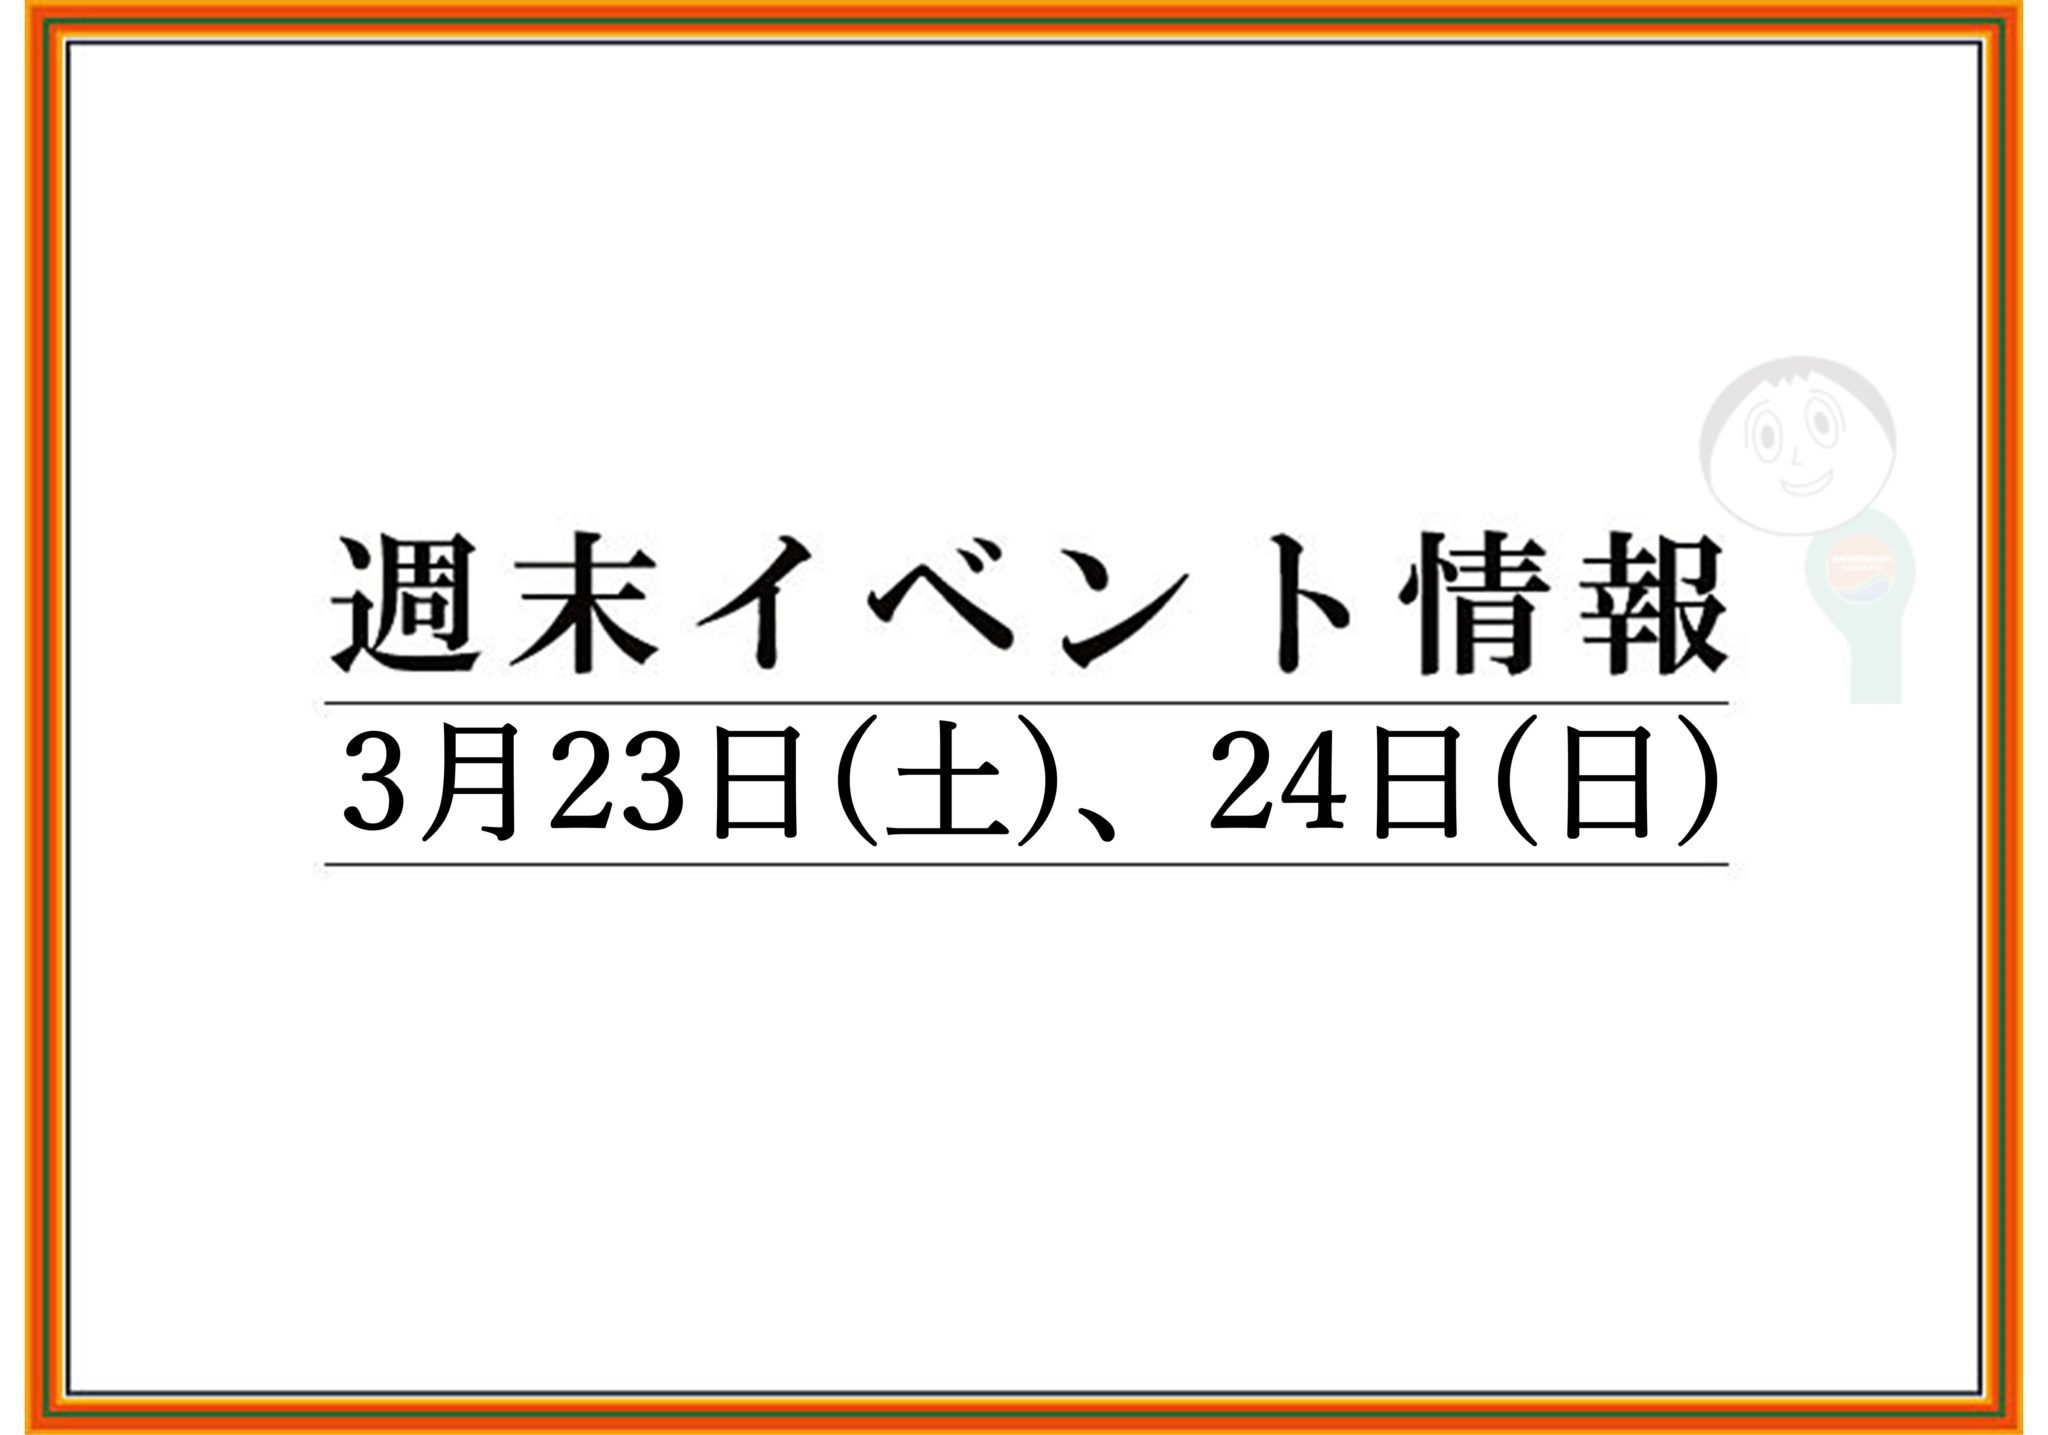 【まとめ】2019年 山形/上山/天童の週末イベント情報　3月23日(土),24日(日)